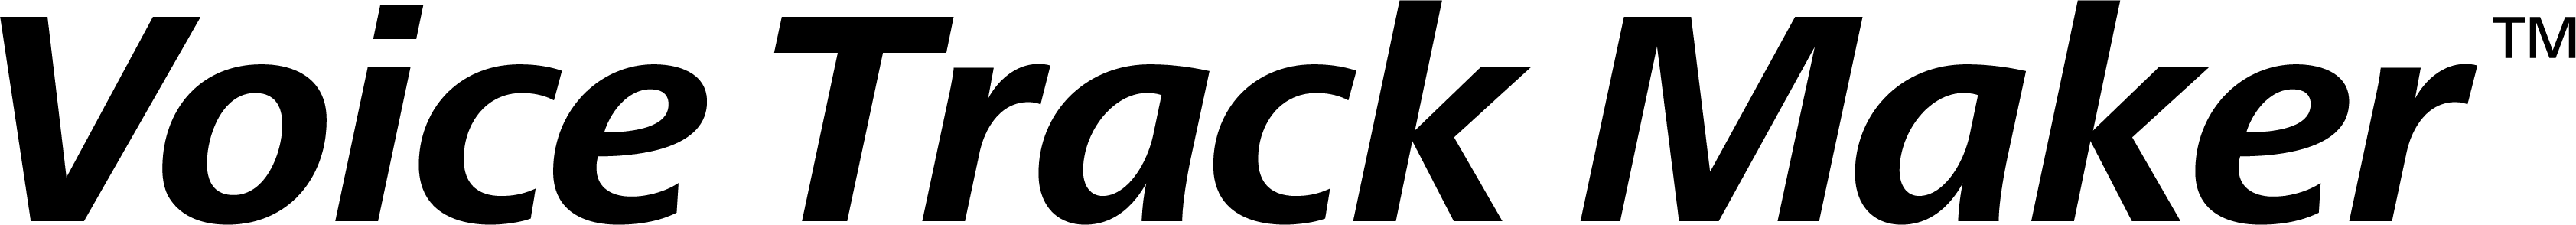 vtm_logo